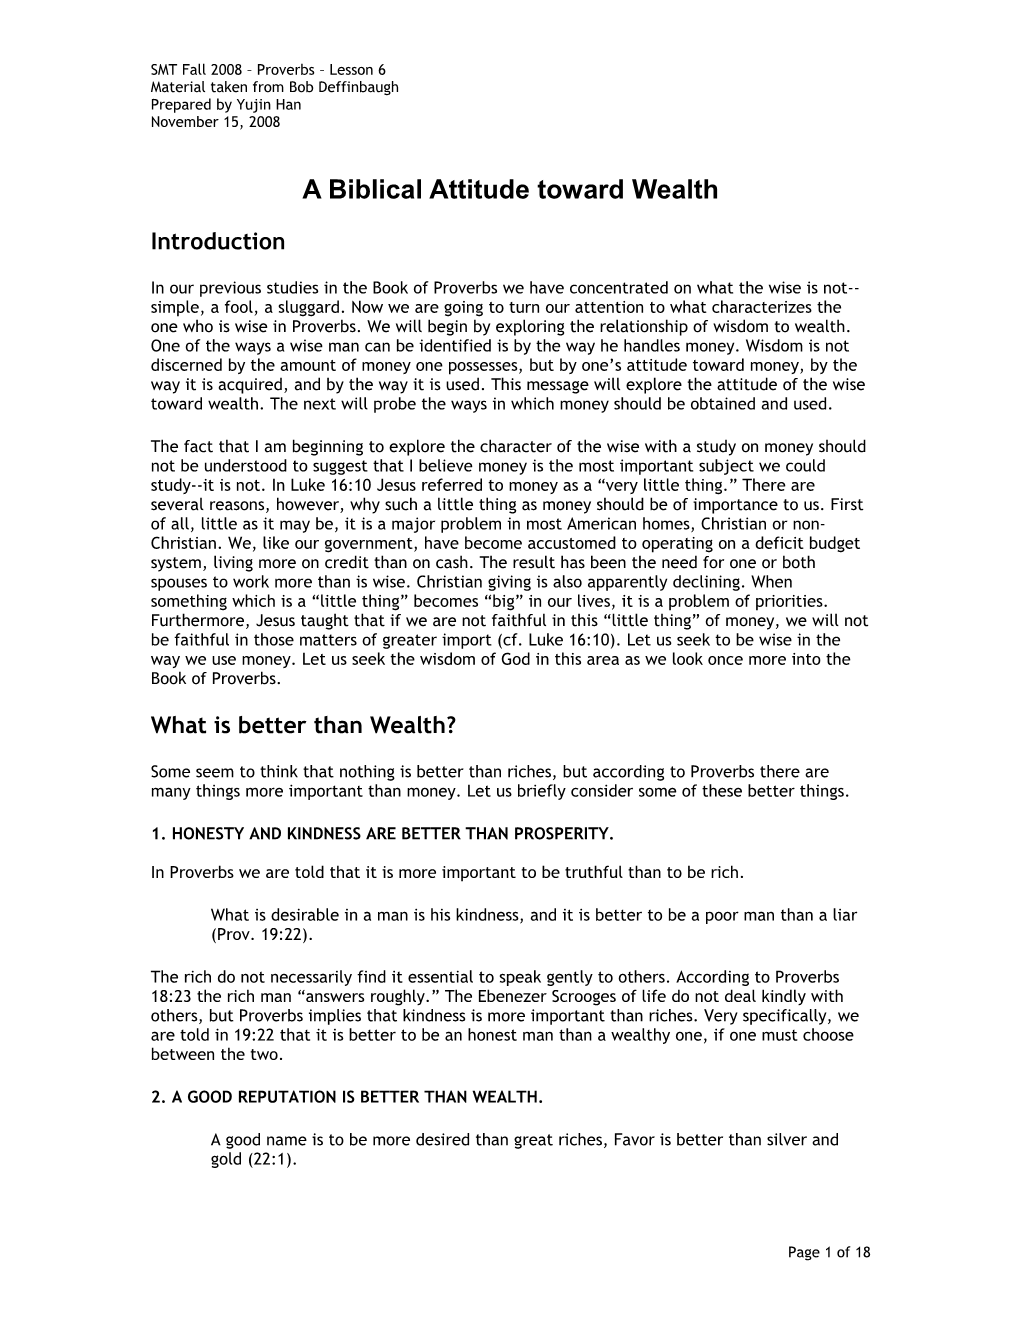 A Biblical Attitude Toward Wealth